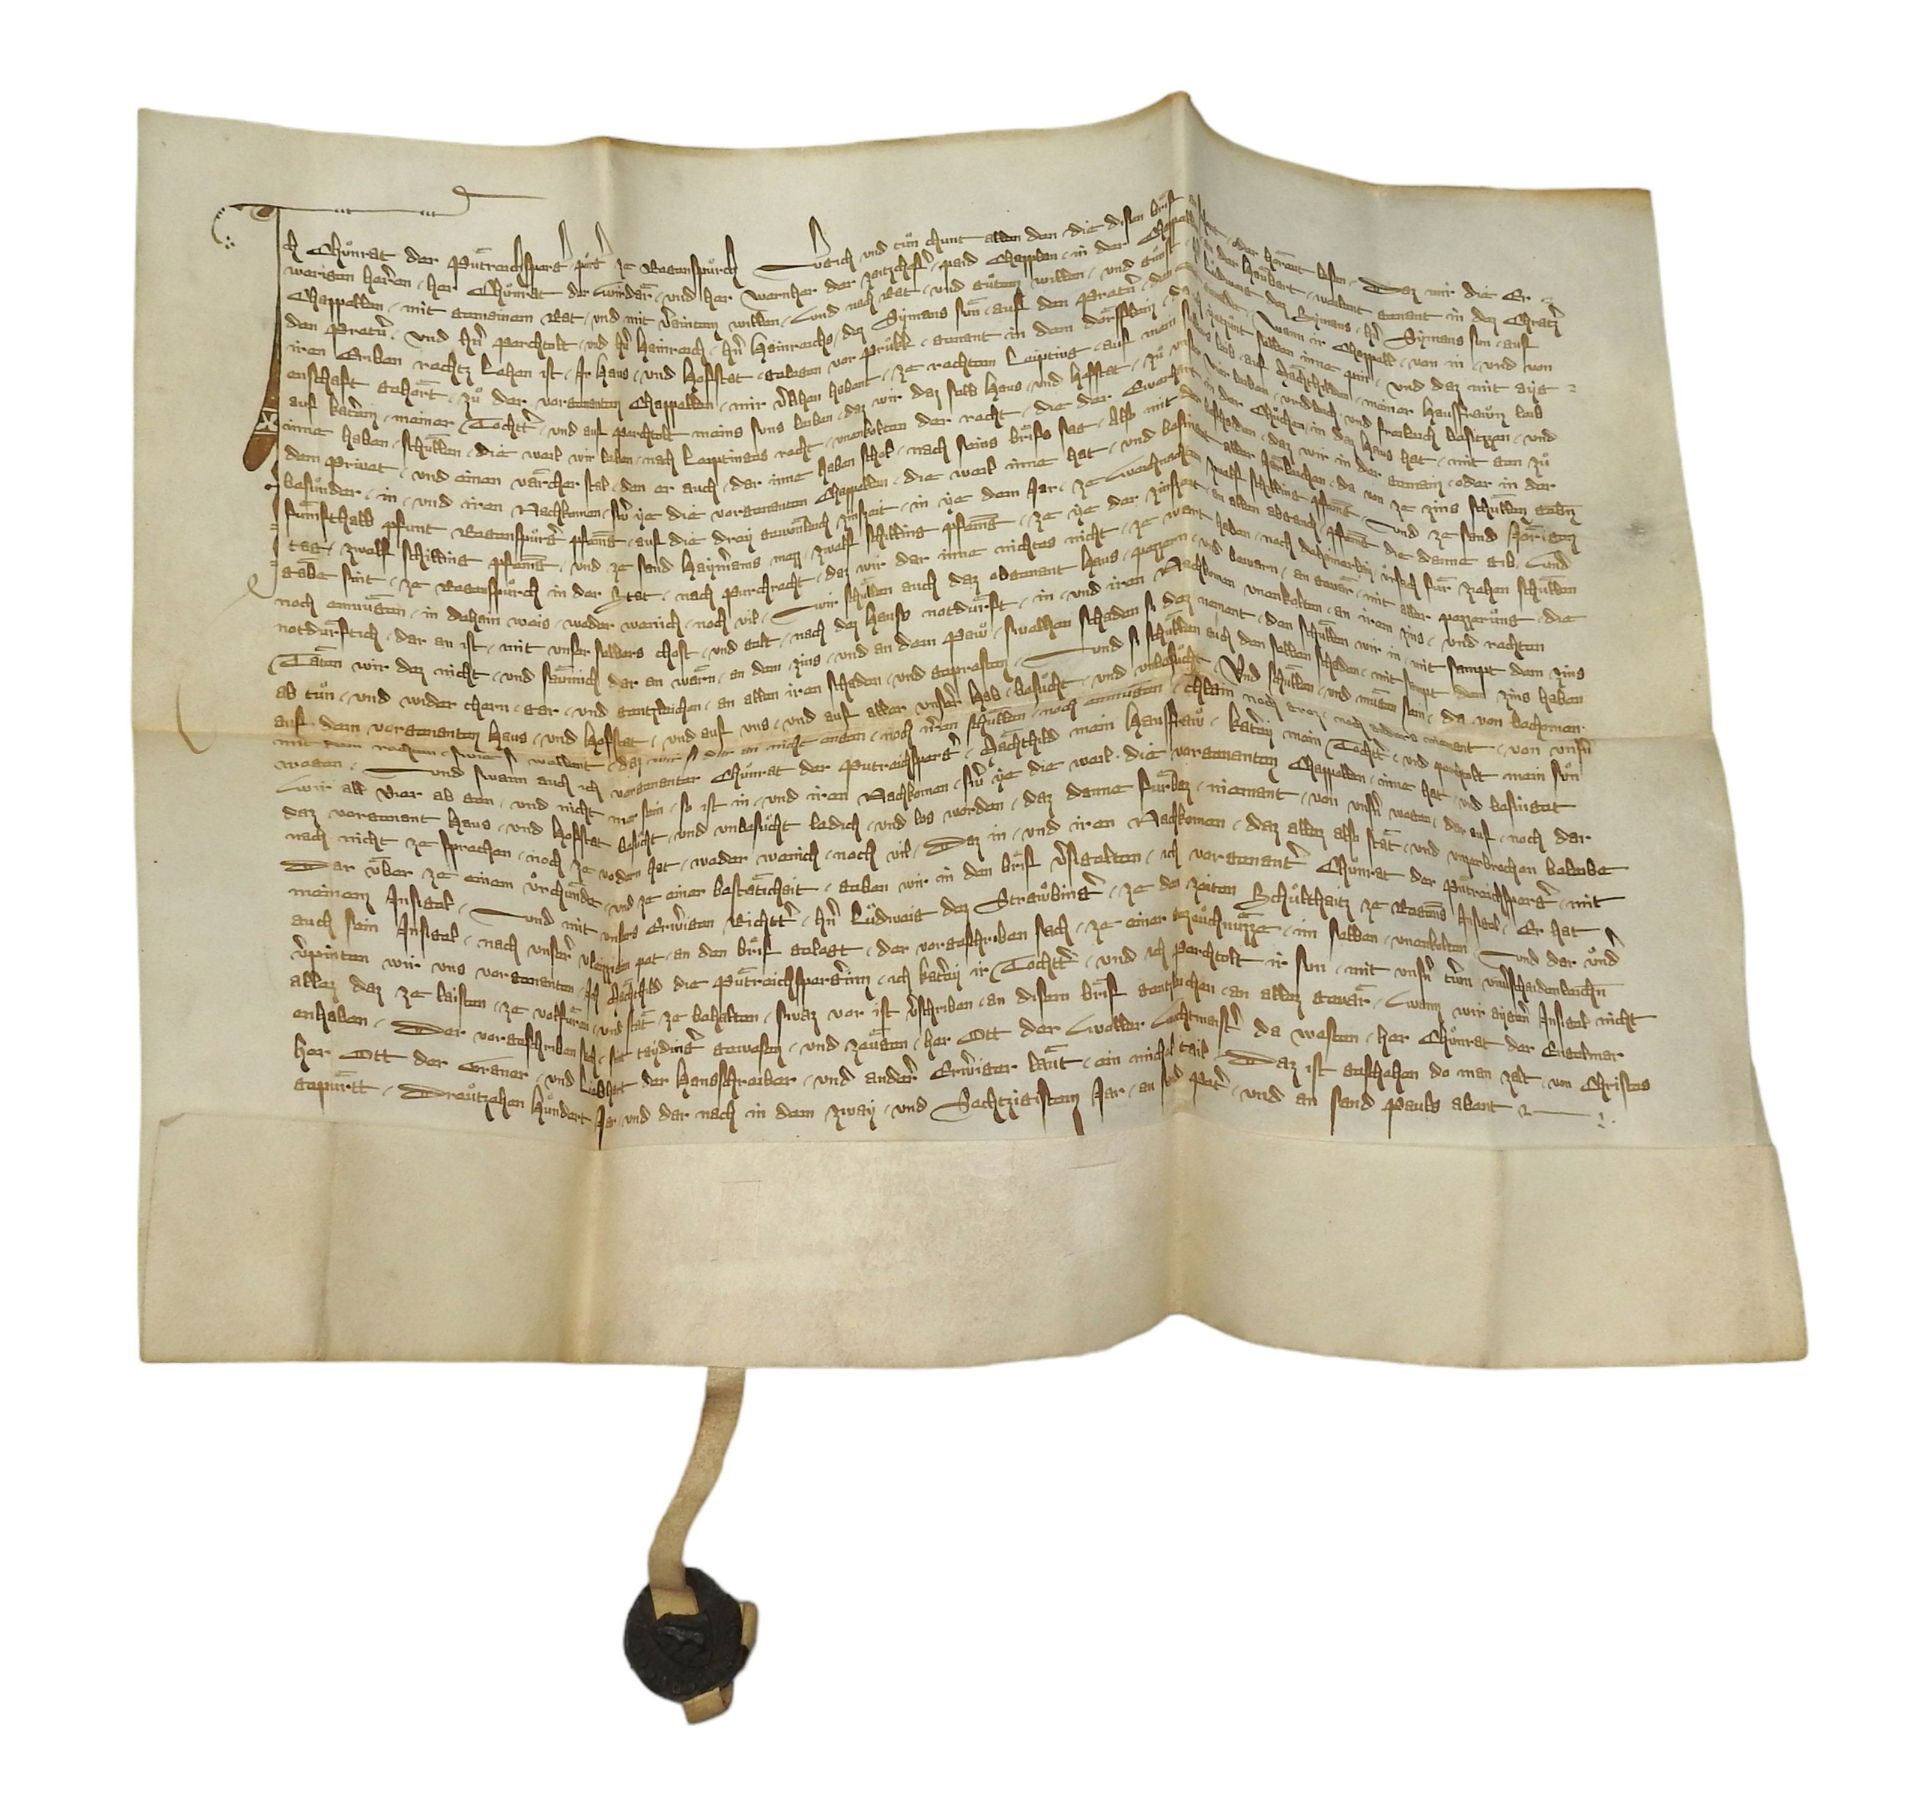 Urkunde aus dem Jahr 1362 zum Haus Heuport, Regensburg - Image 2 of 3